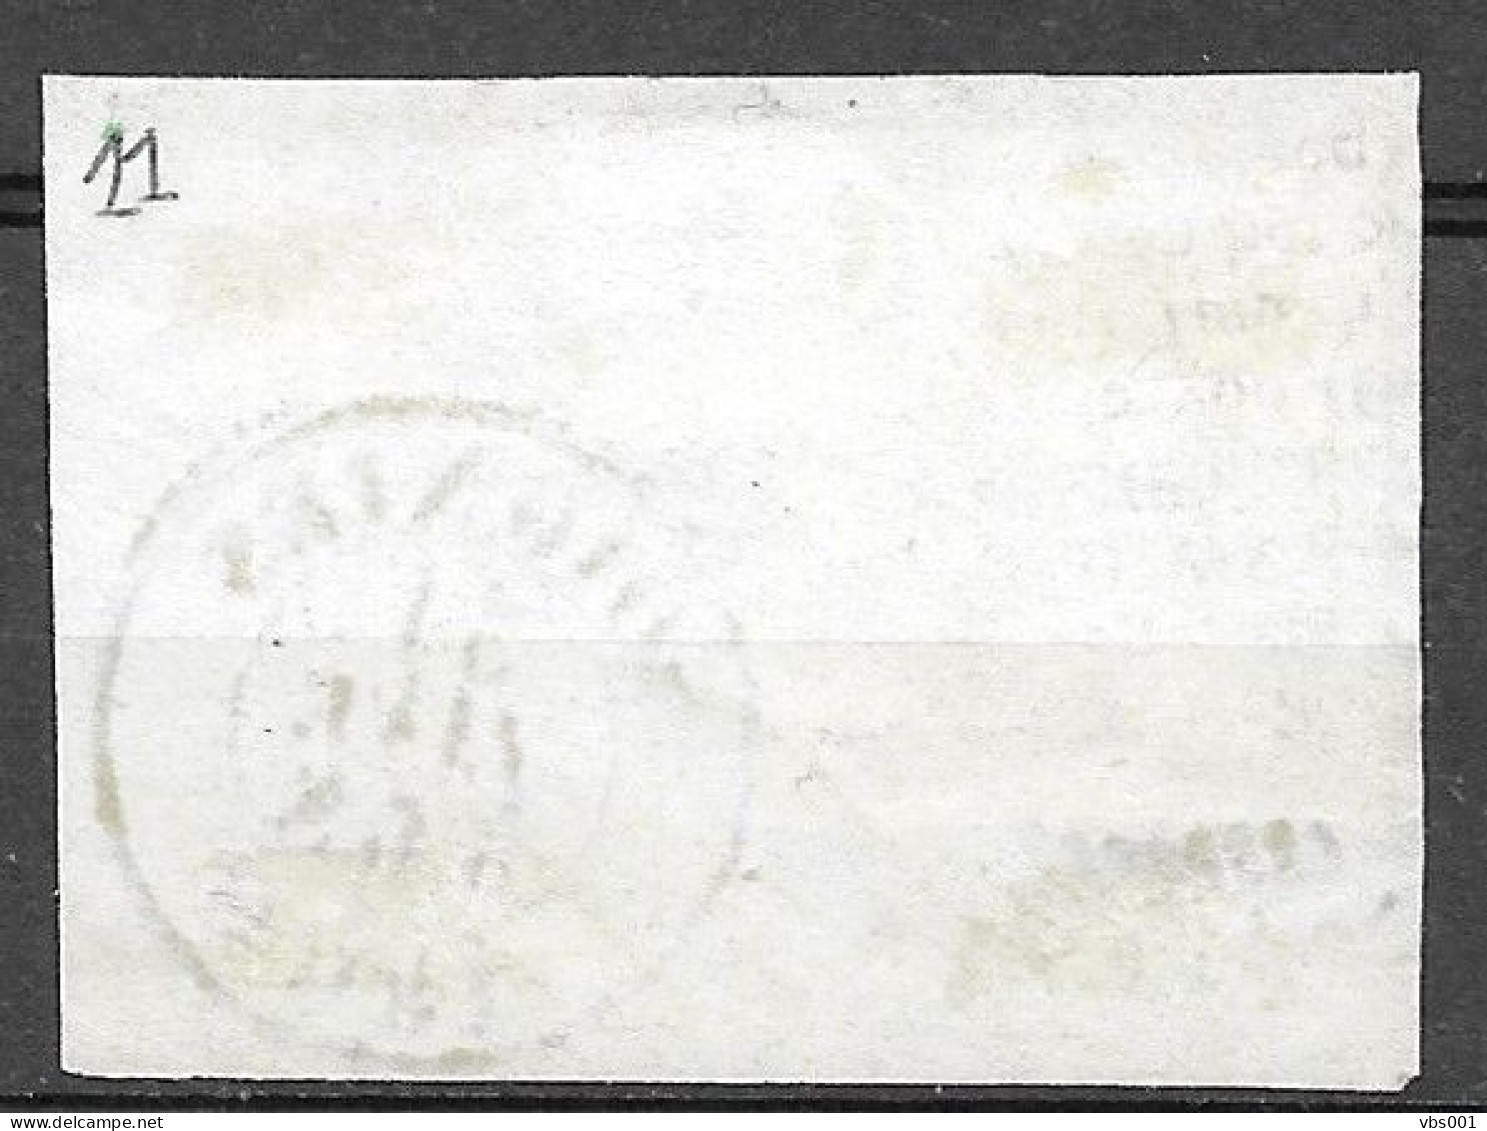 OBP11A Op Fragment, Met 4 Randen En Bladboord, Met Balkstempel P108 Soignies + Vertrekstempel (zie Scans) - 1858-1862 Medallions (9/12)